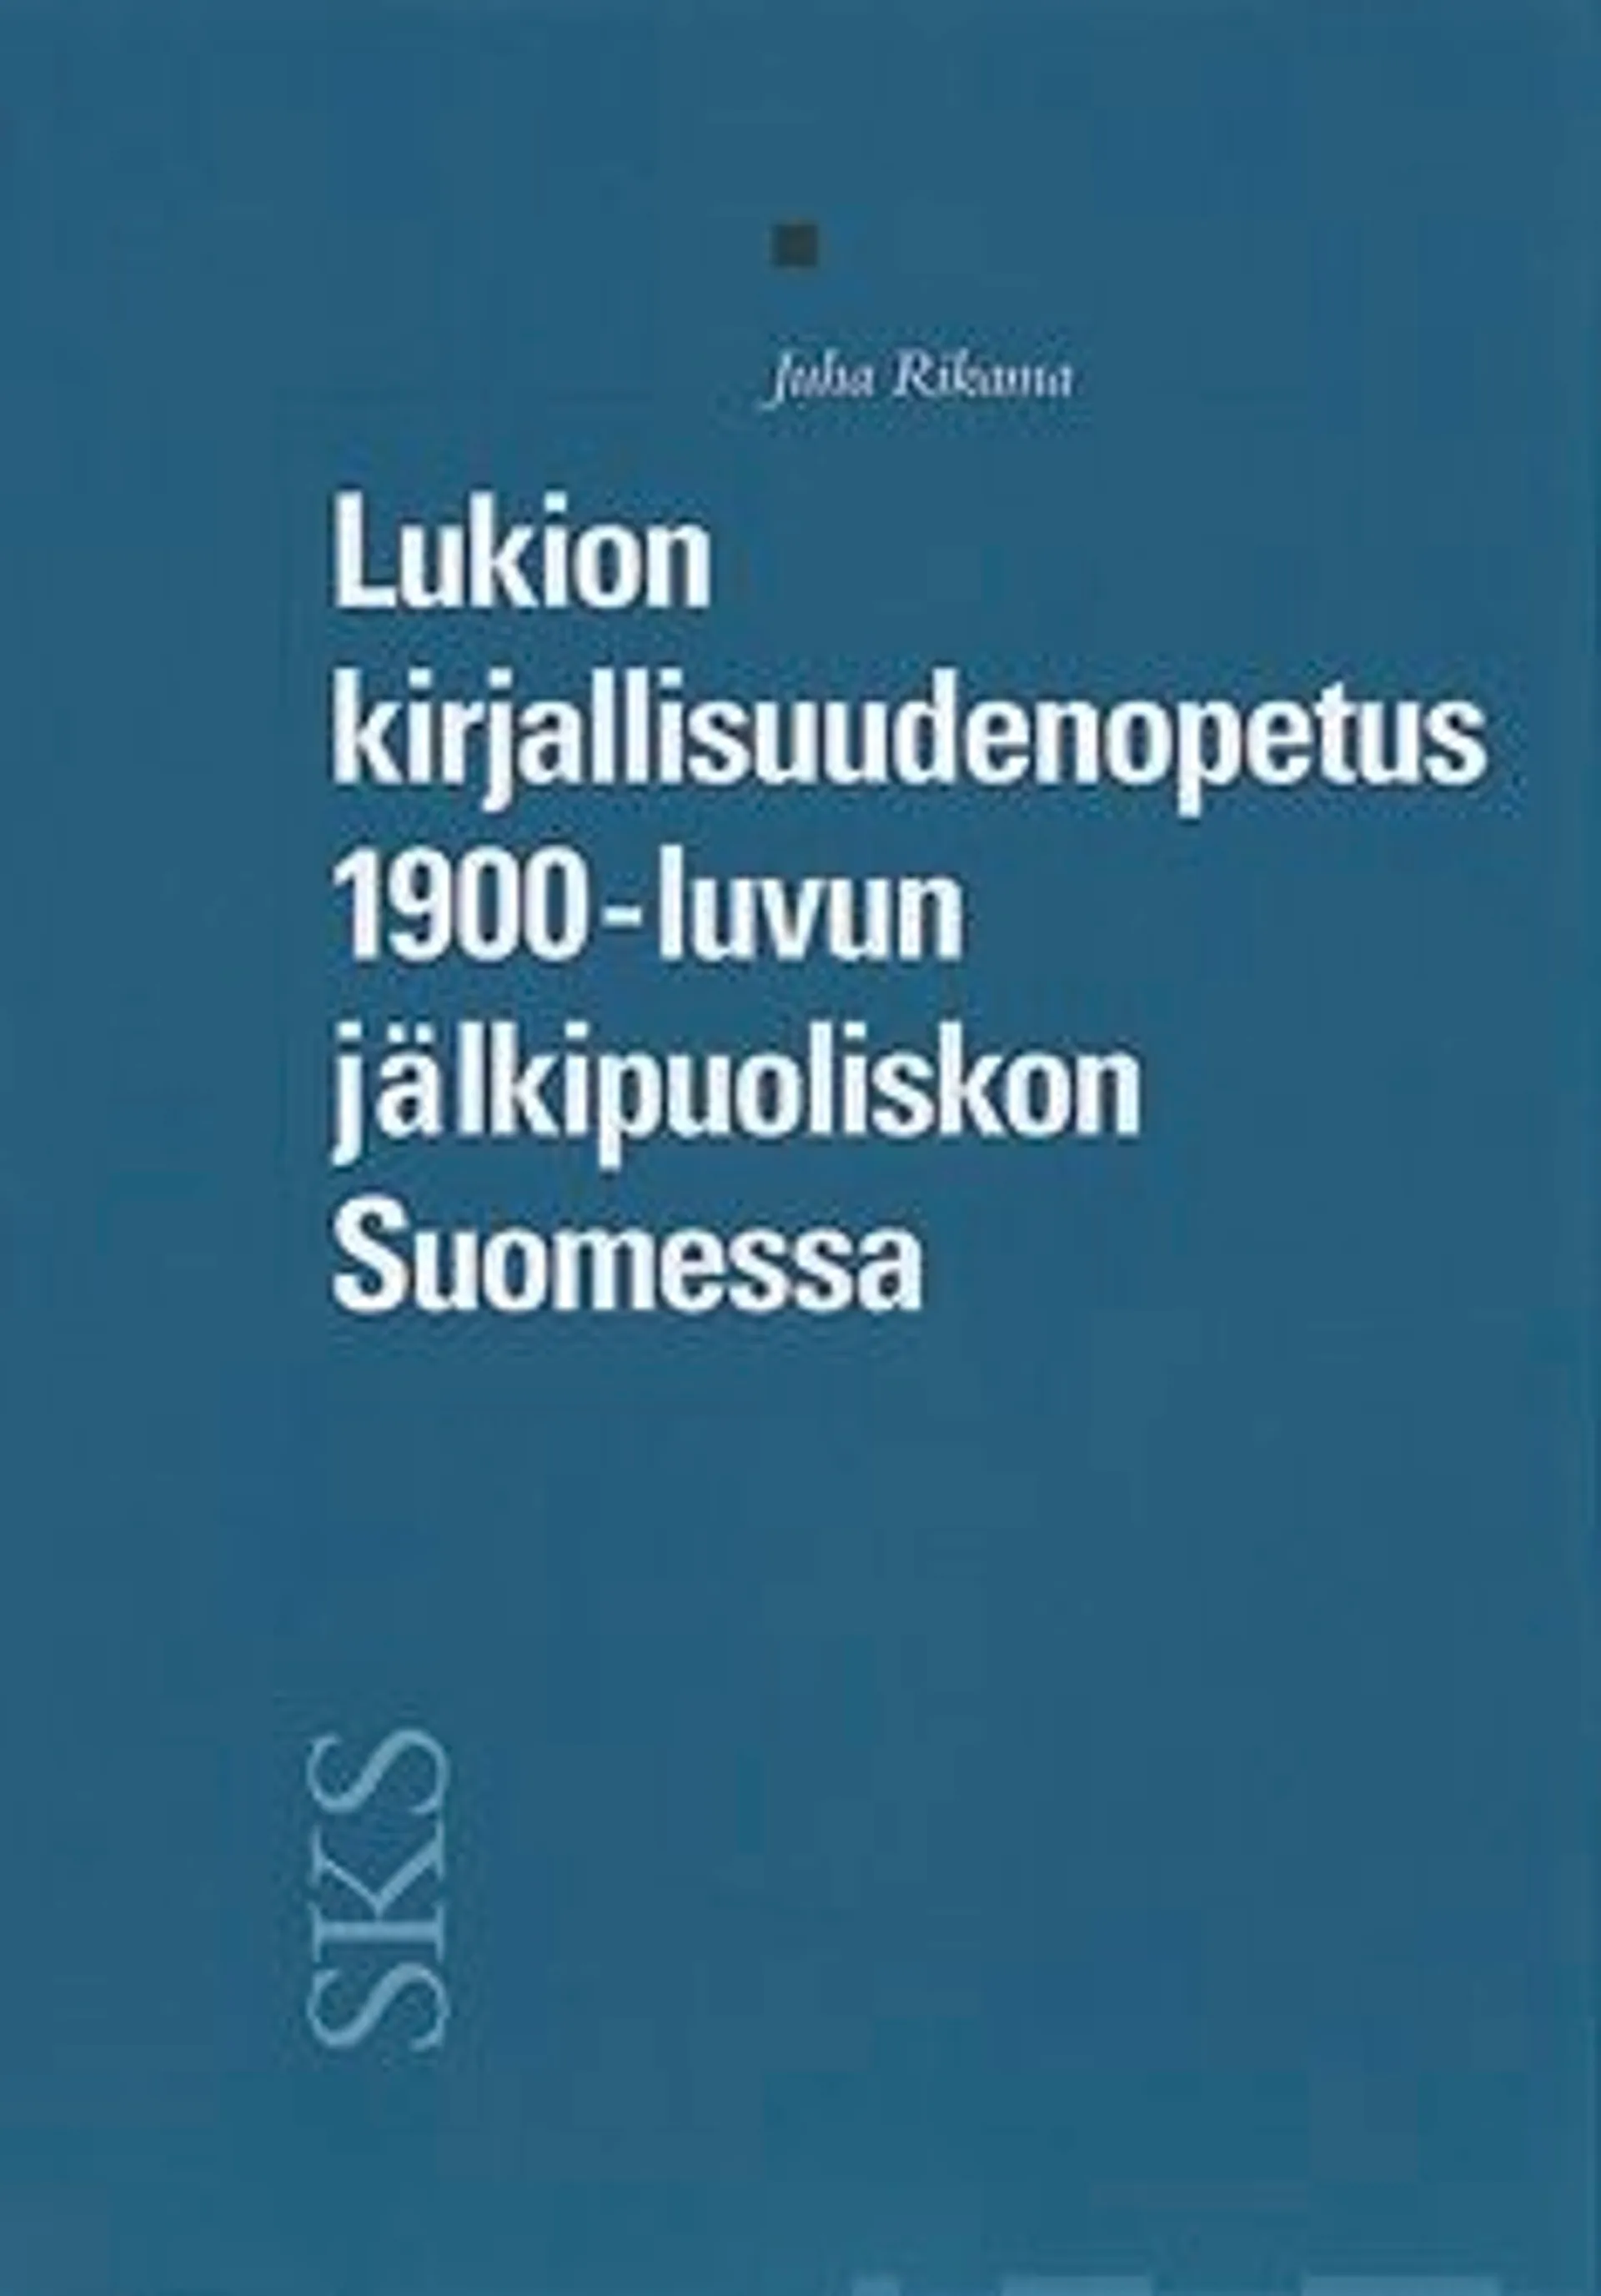 Rikama, Lukion kirjallisuudenopetus 1900-luvun jälkipuoliskon Suomessa